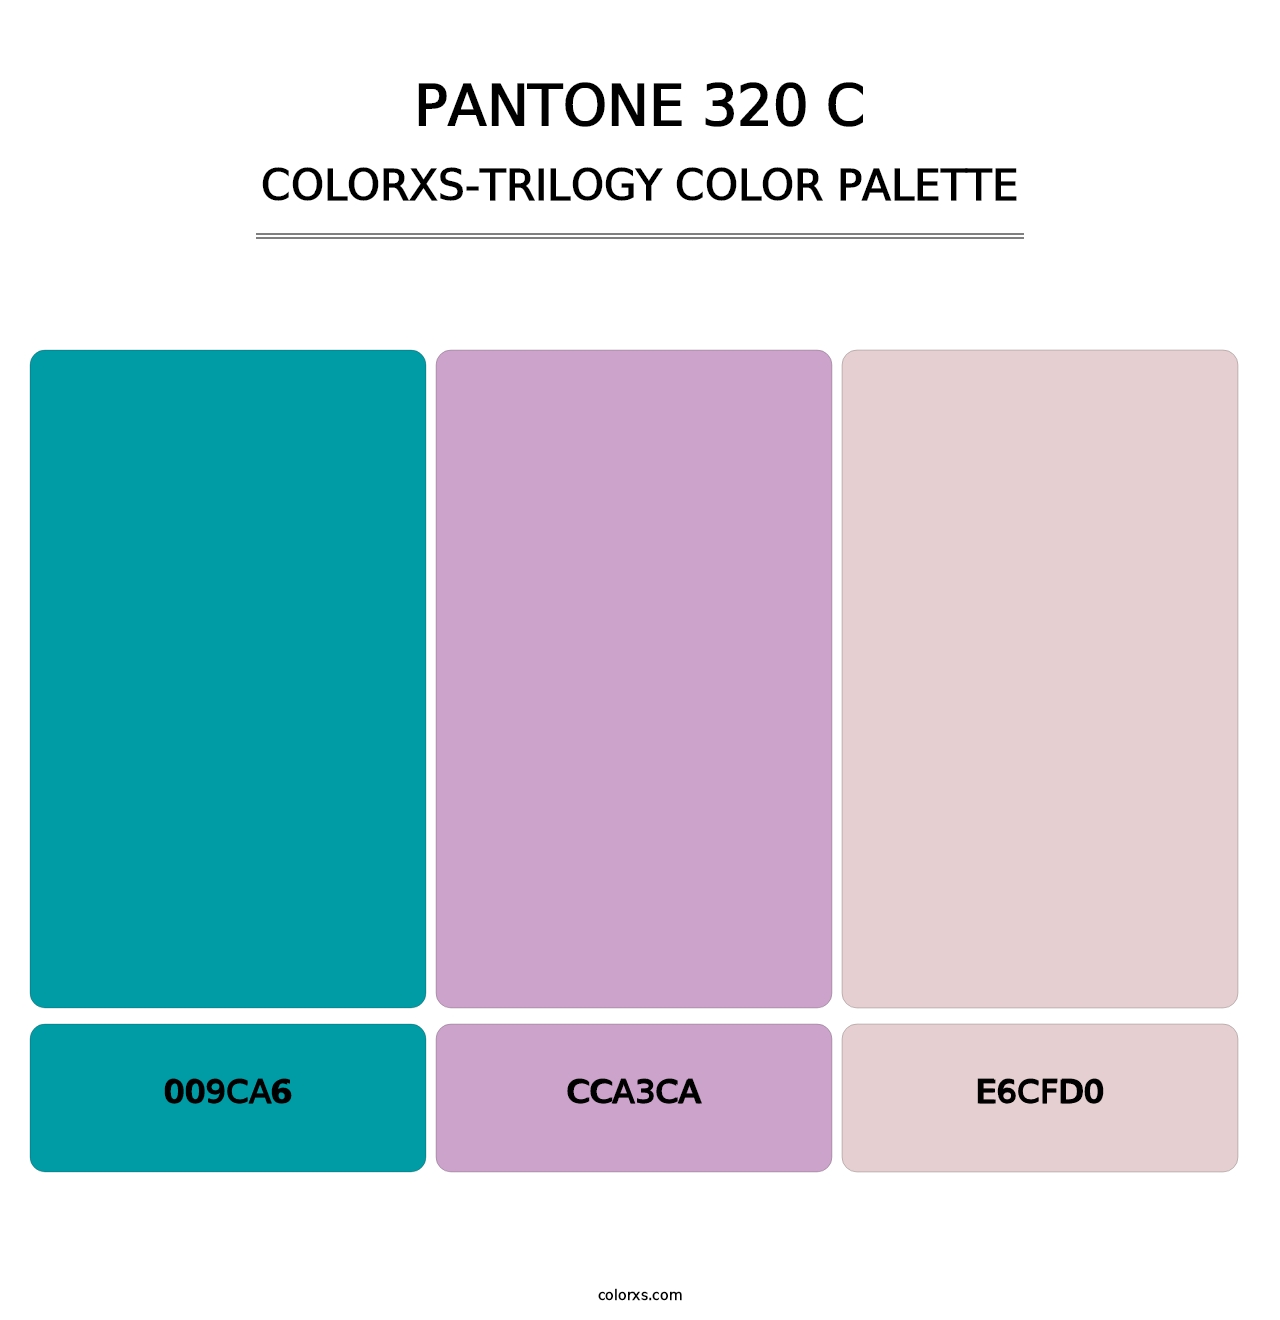 PANTONE 320 C - Colorxs Trilogy Palette